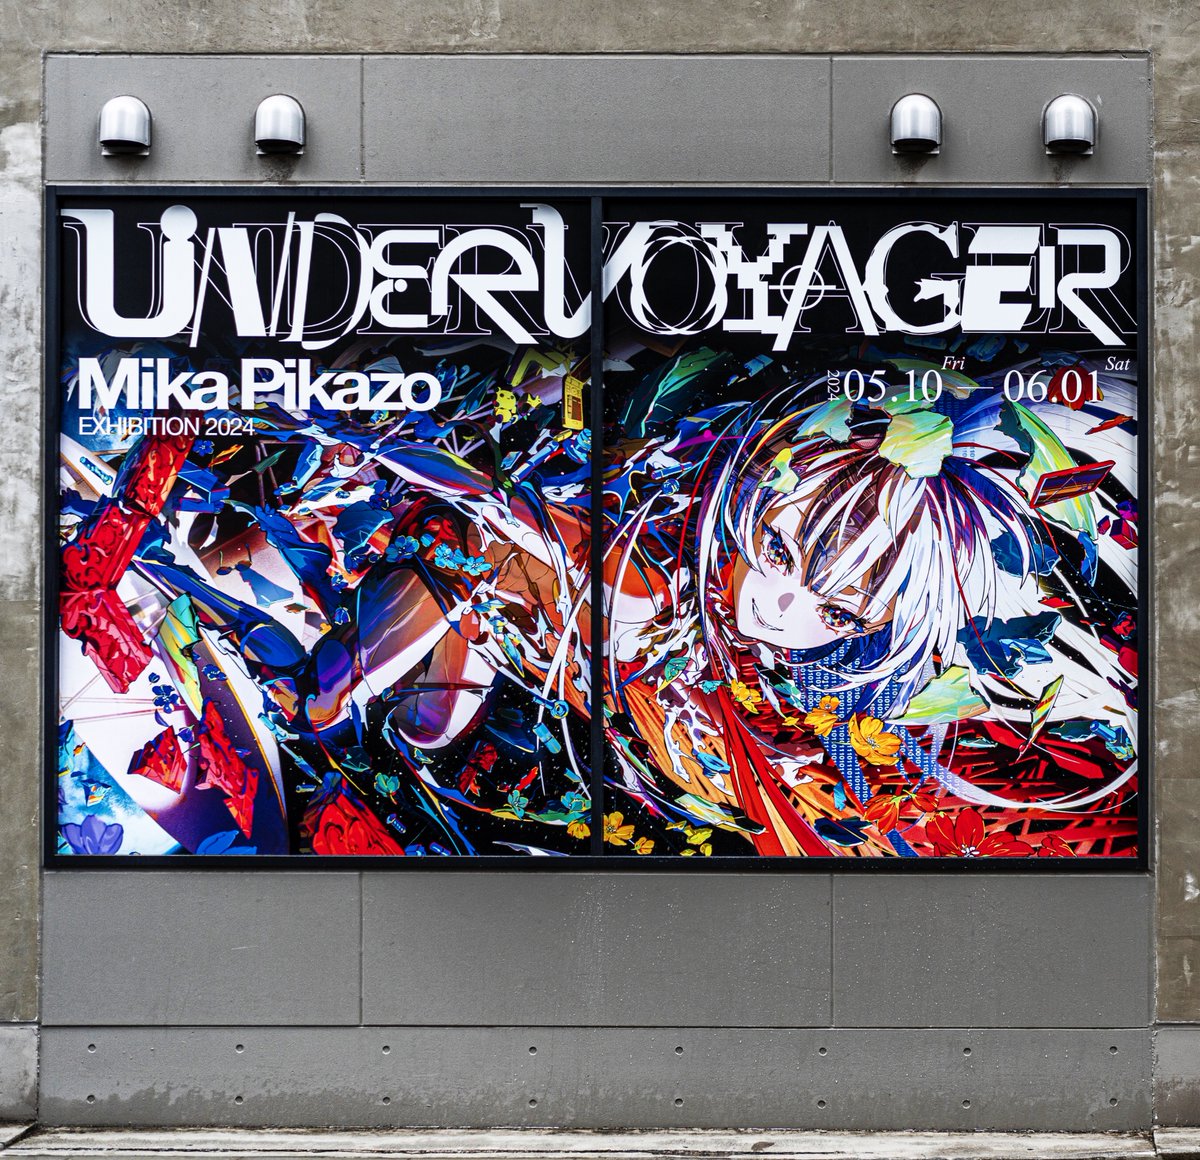 本日
展示会「UNDER VOYAGER」
始まりました！

作品と物語が融合する1つの空間を目指しました。
実験的な立体作品、映像を沢山盛り込んだ展示会になっています。
是非会場で見ていただけると嬉しいです！

#UNDERVOYAGER #MikaPikazo展